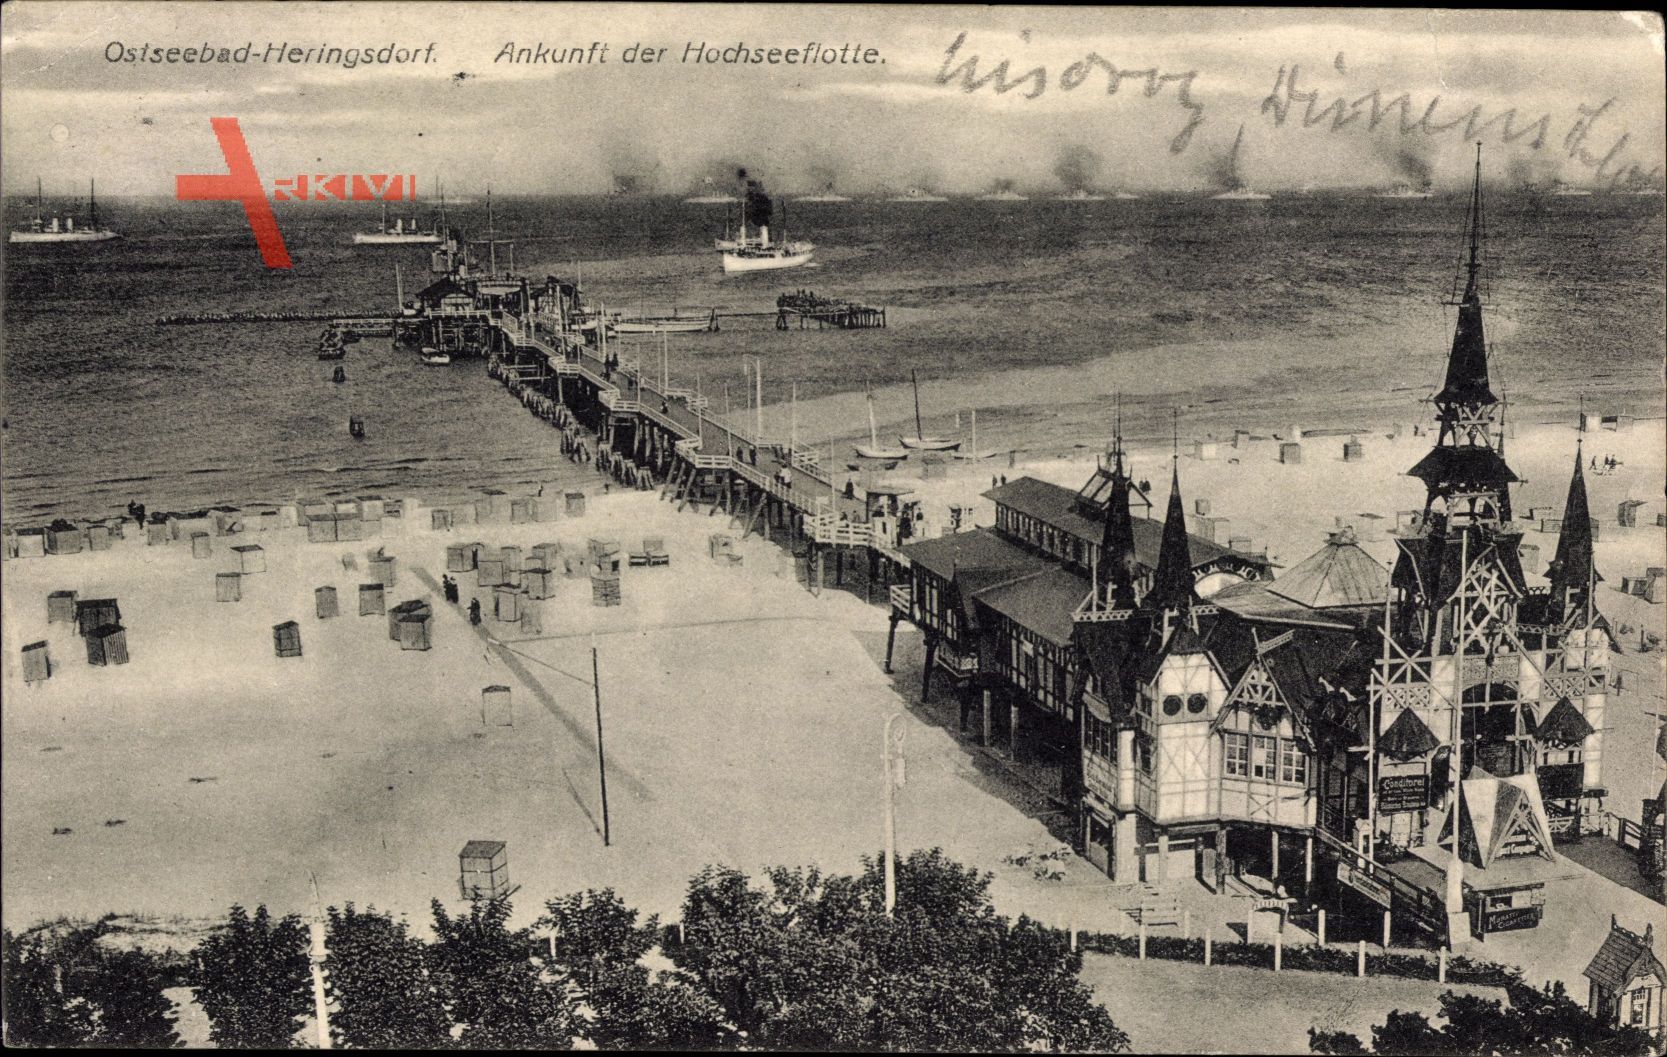 Ankunft der Hochseeflotte im Ostseebad Heringsdorf auf Usedom um 1913